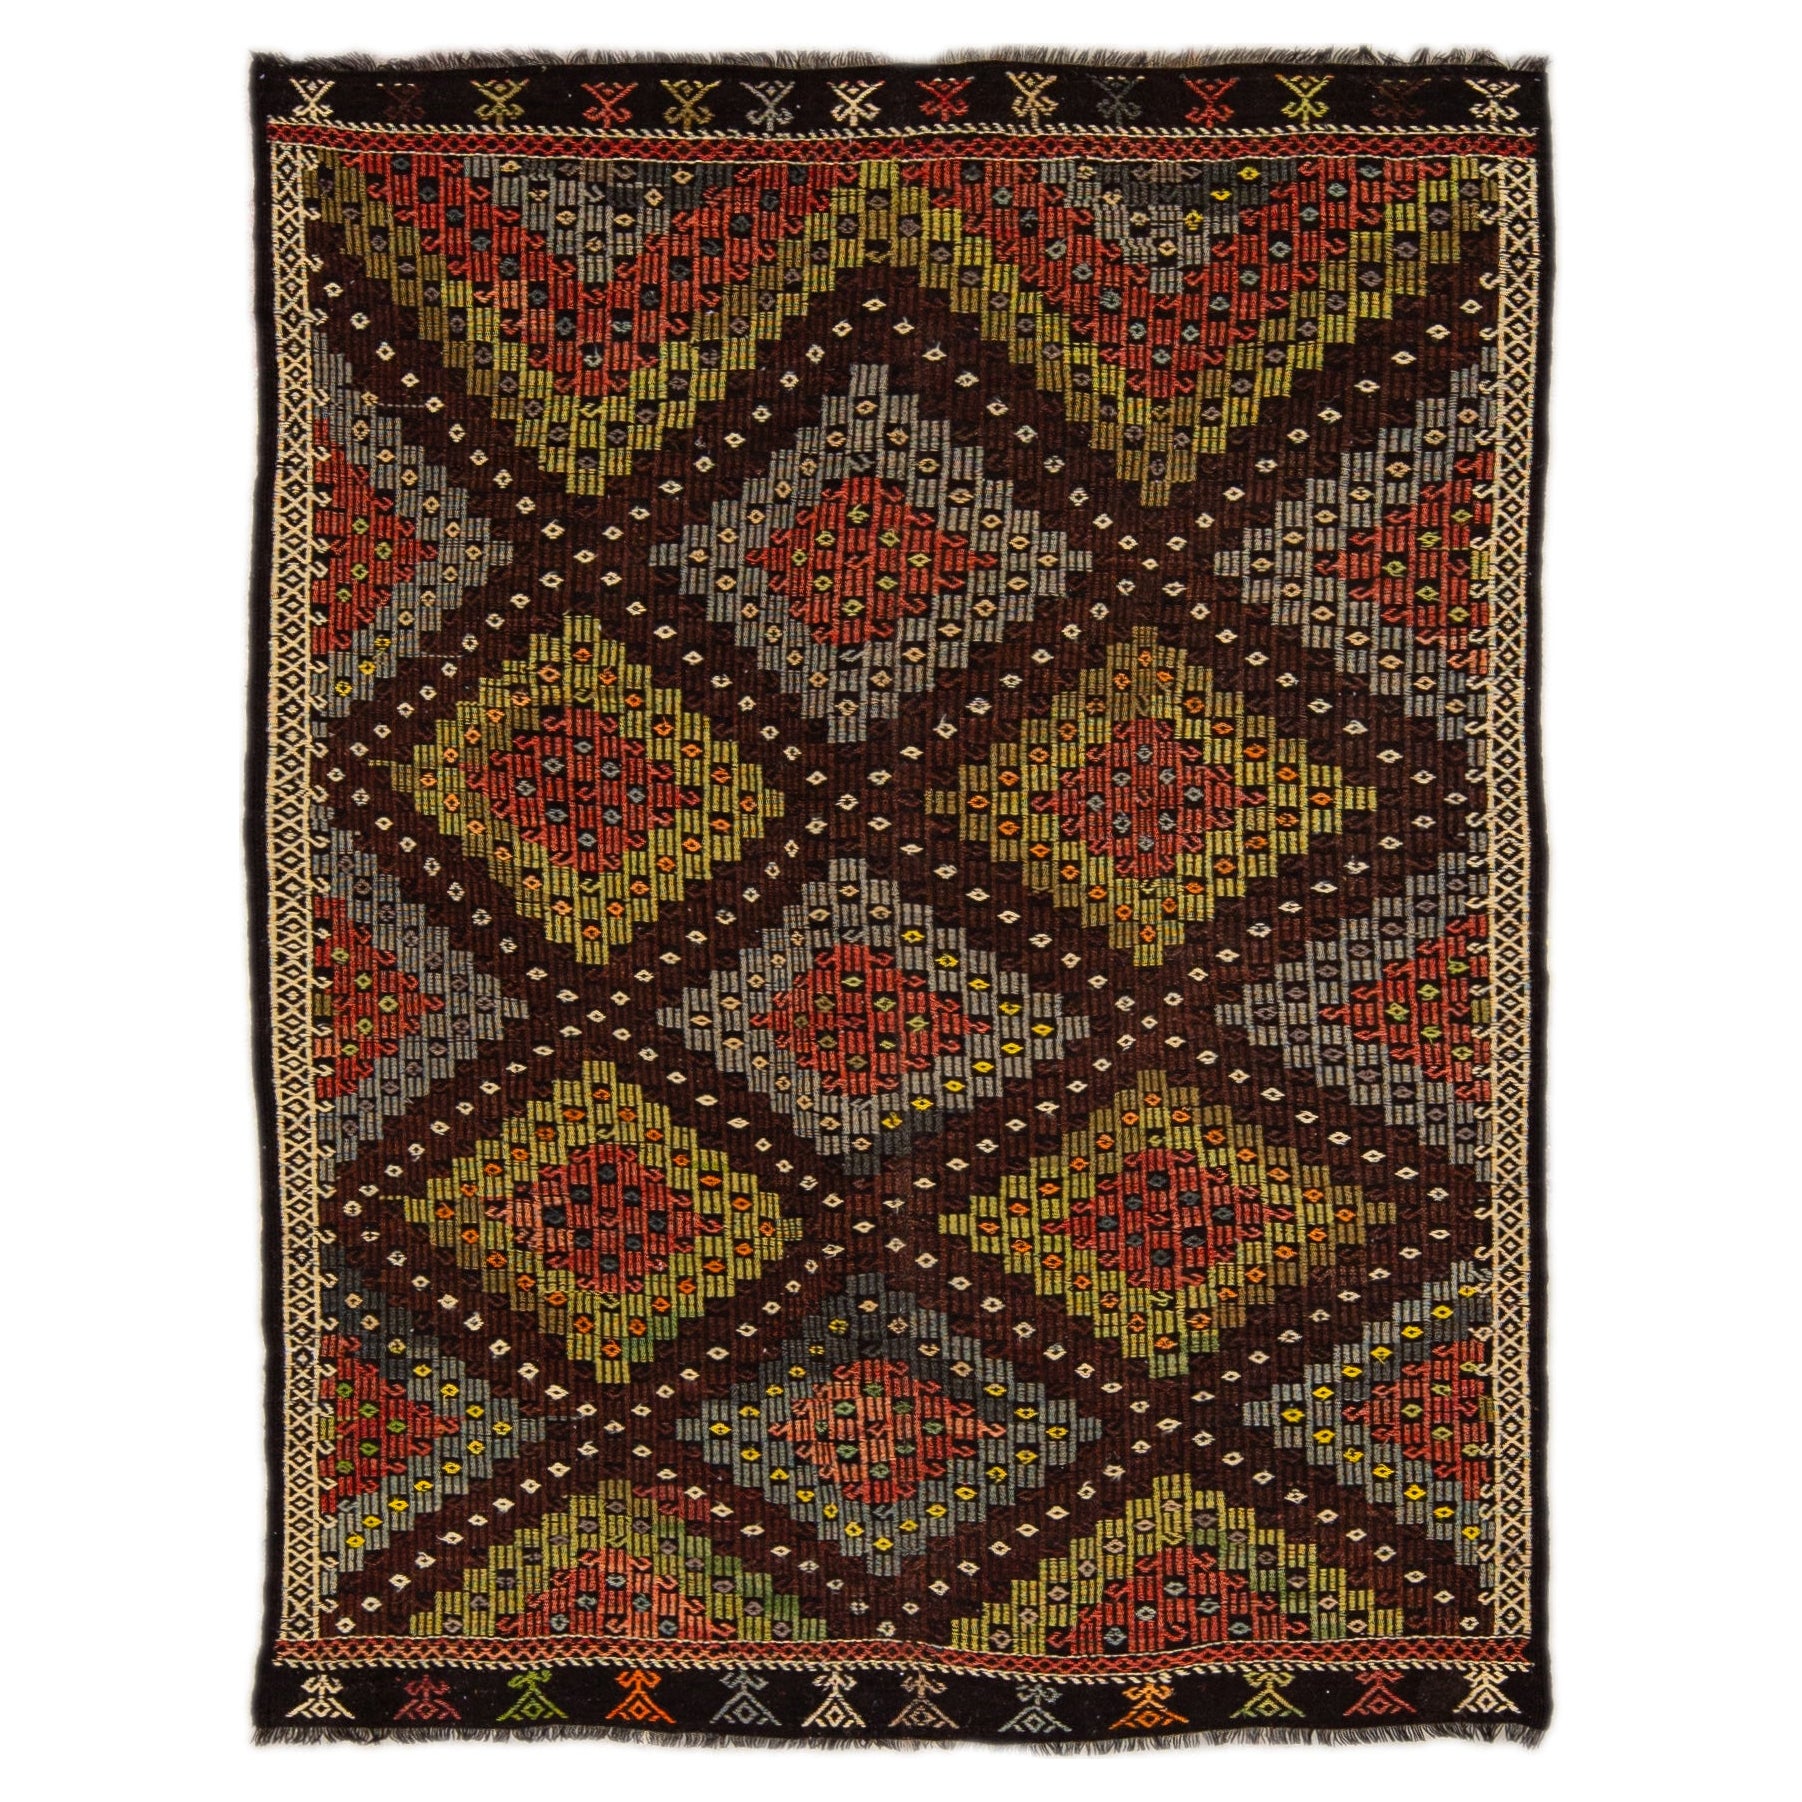 Brown Vintage Soumak Handmade Geometric Designed Wool Rug